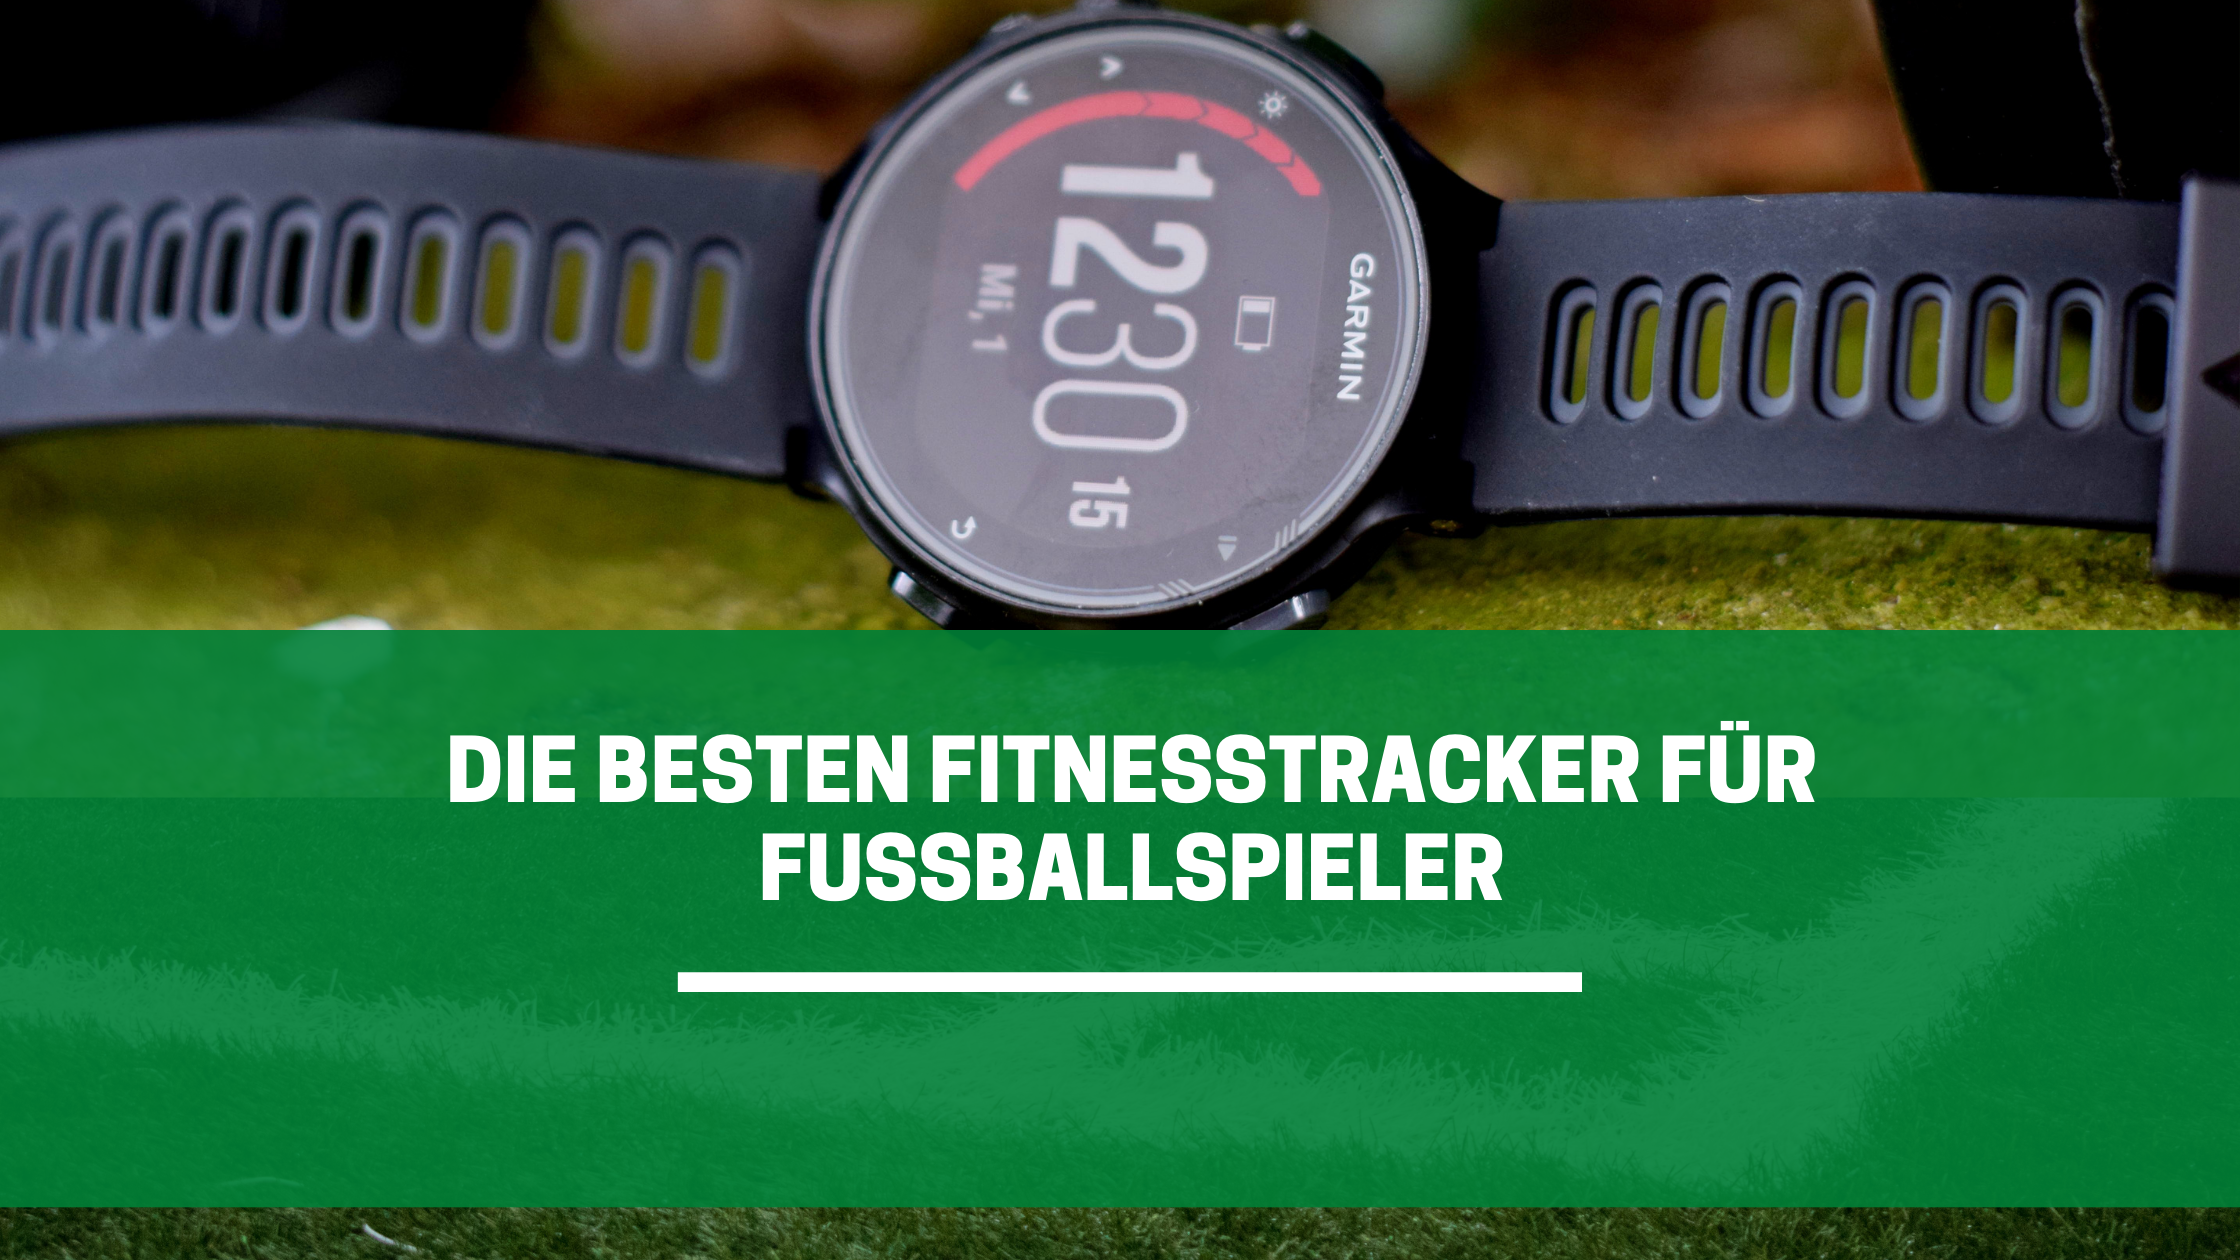 ➤ Die 5 besten Fitness-Tracker für Fußballspieler